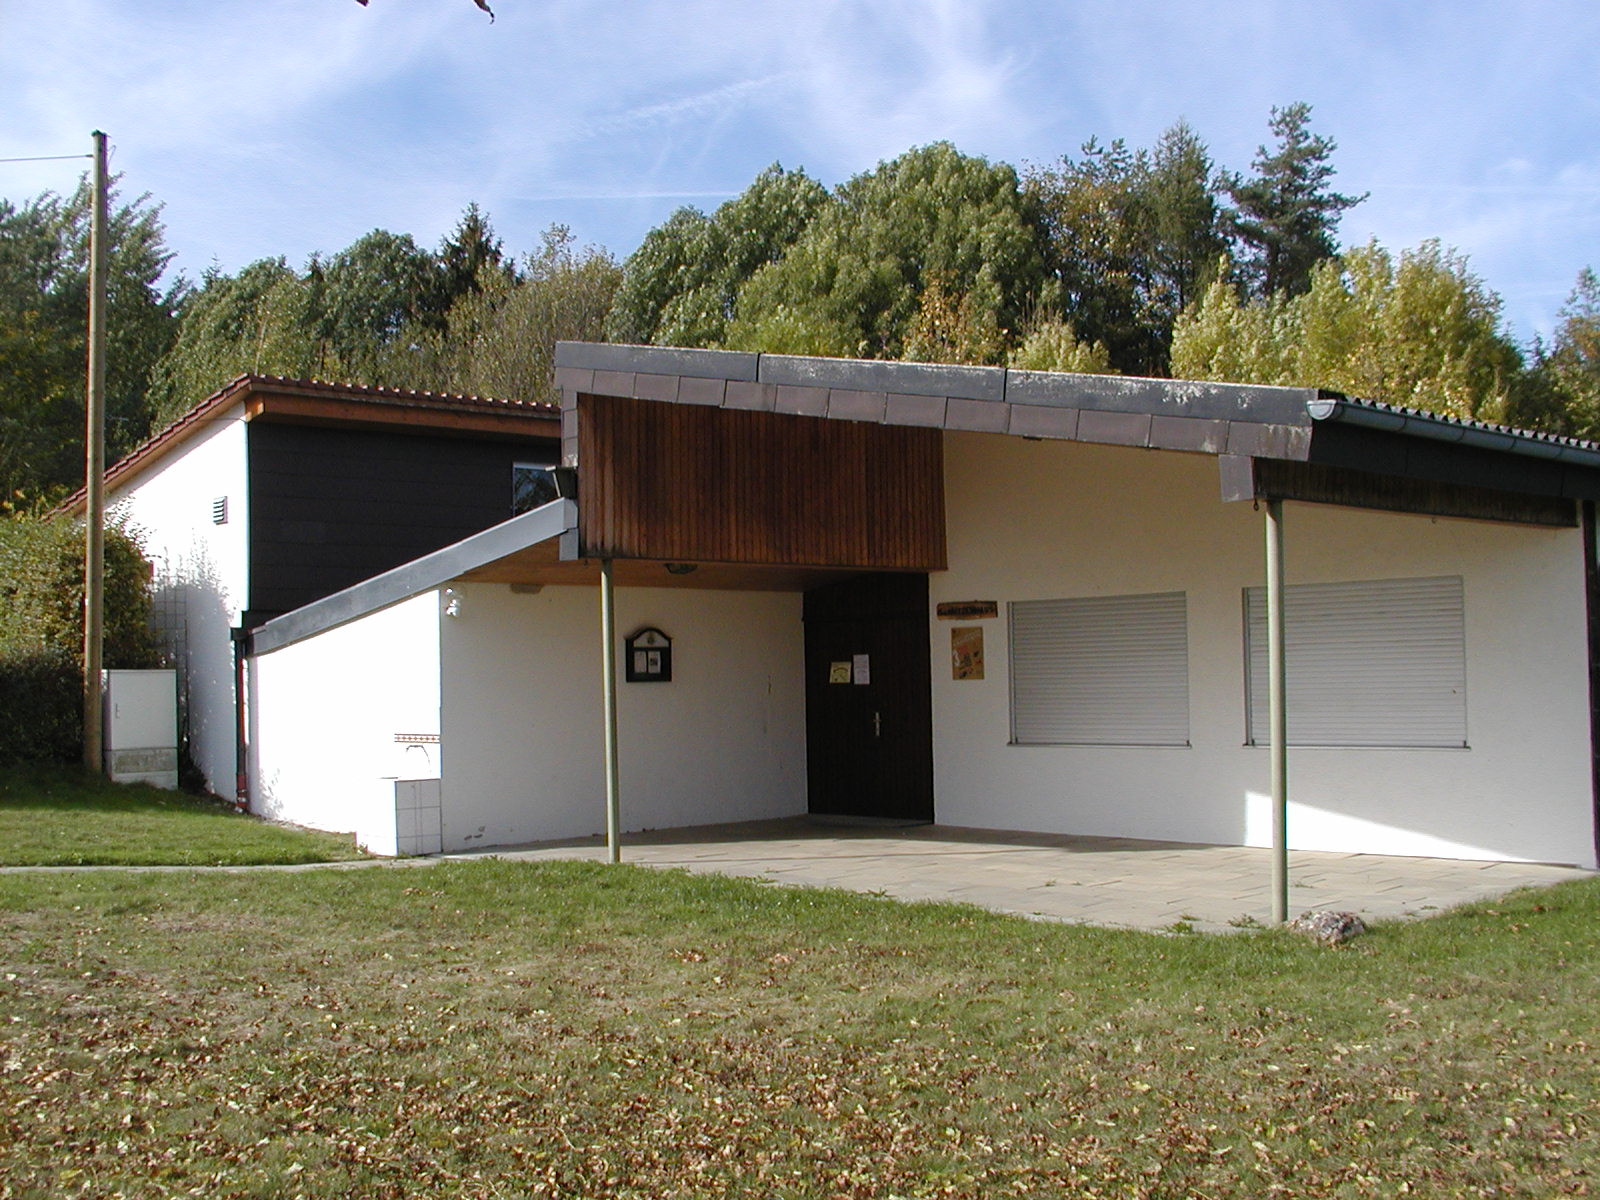  Schützenhaus 